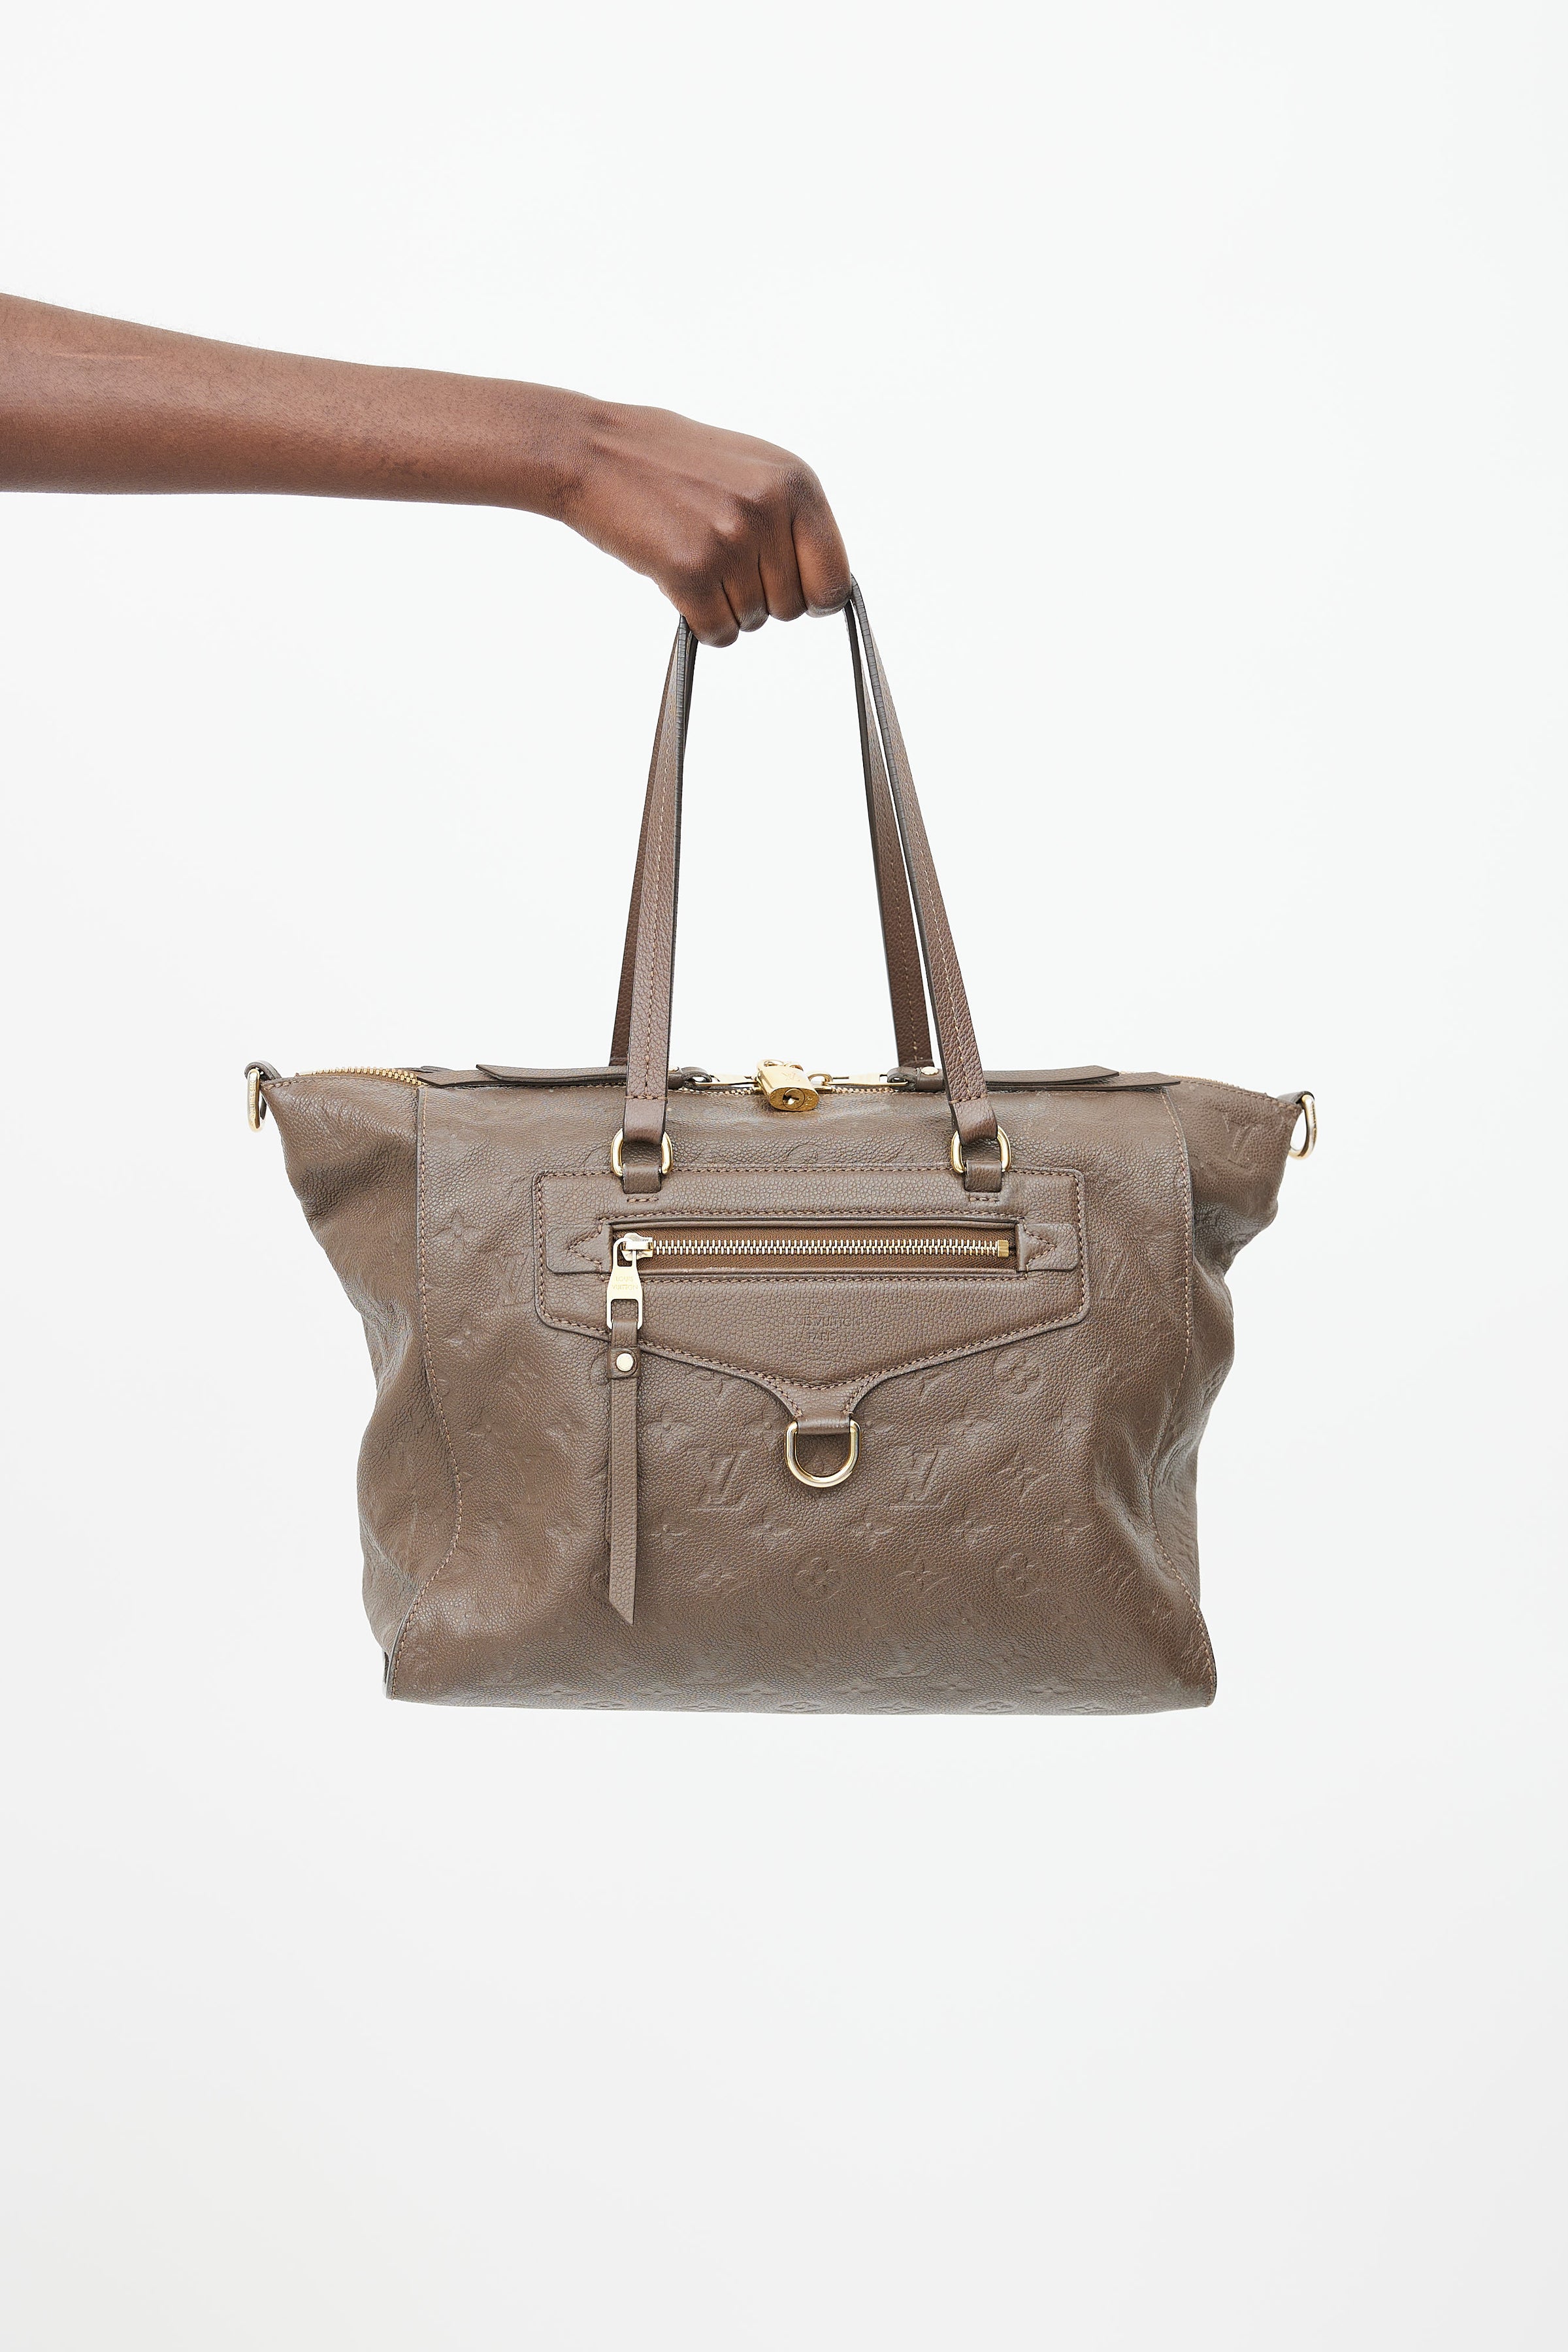 Louis Vuitton - Le Tote Shoulder bag - Catawiki